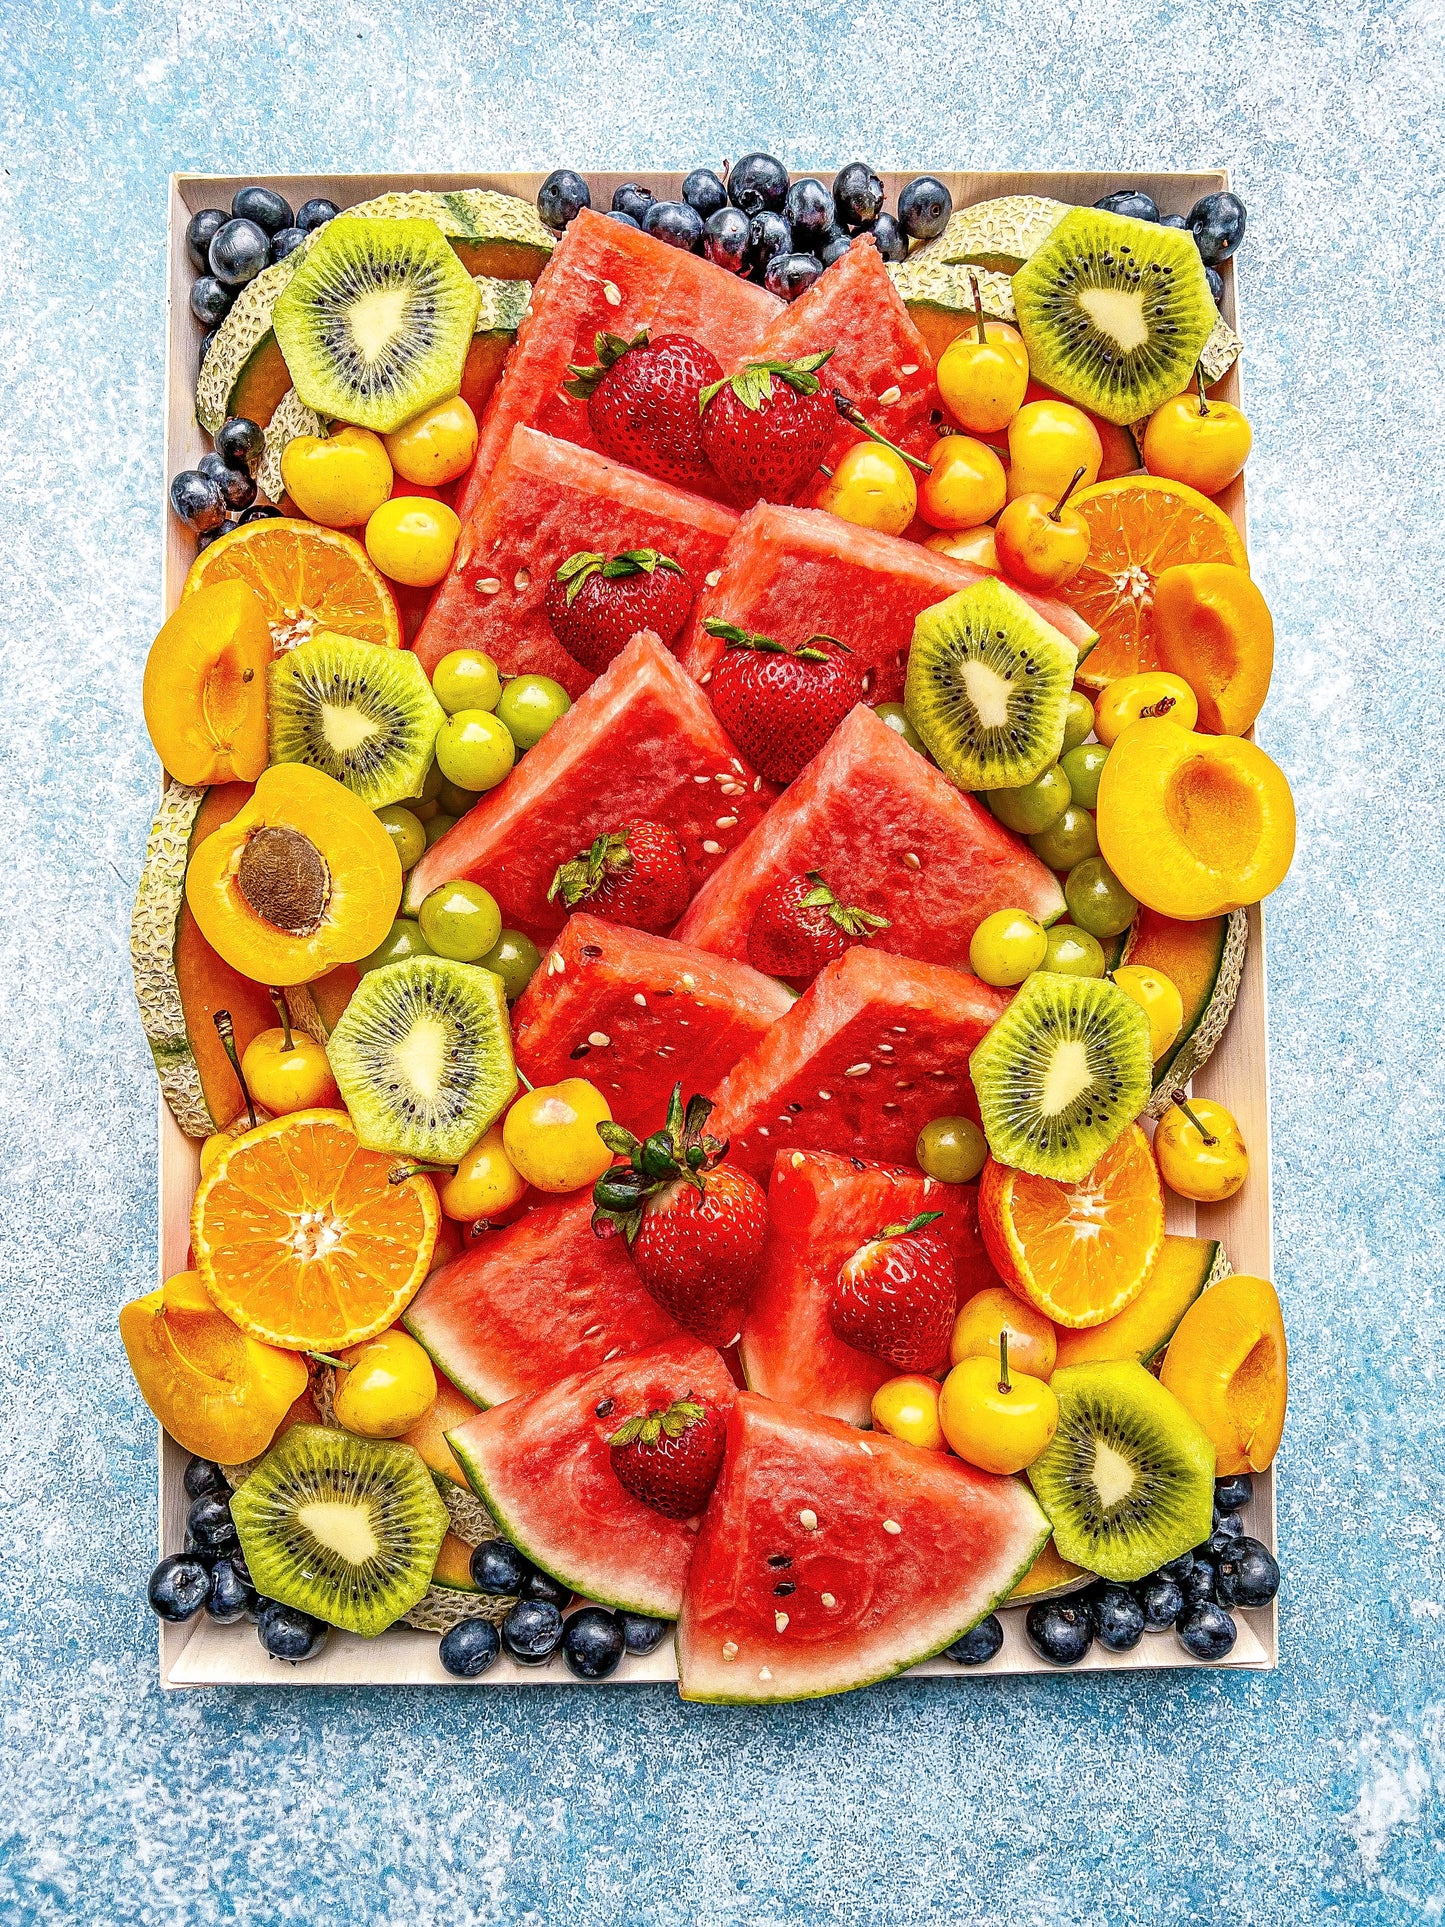 The Fruit Platter